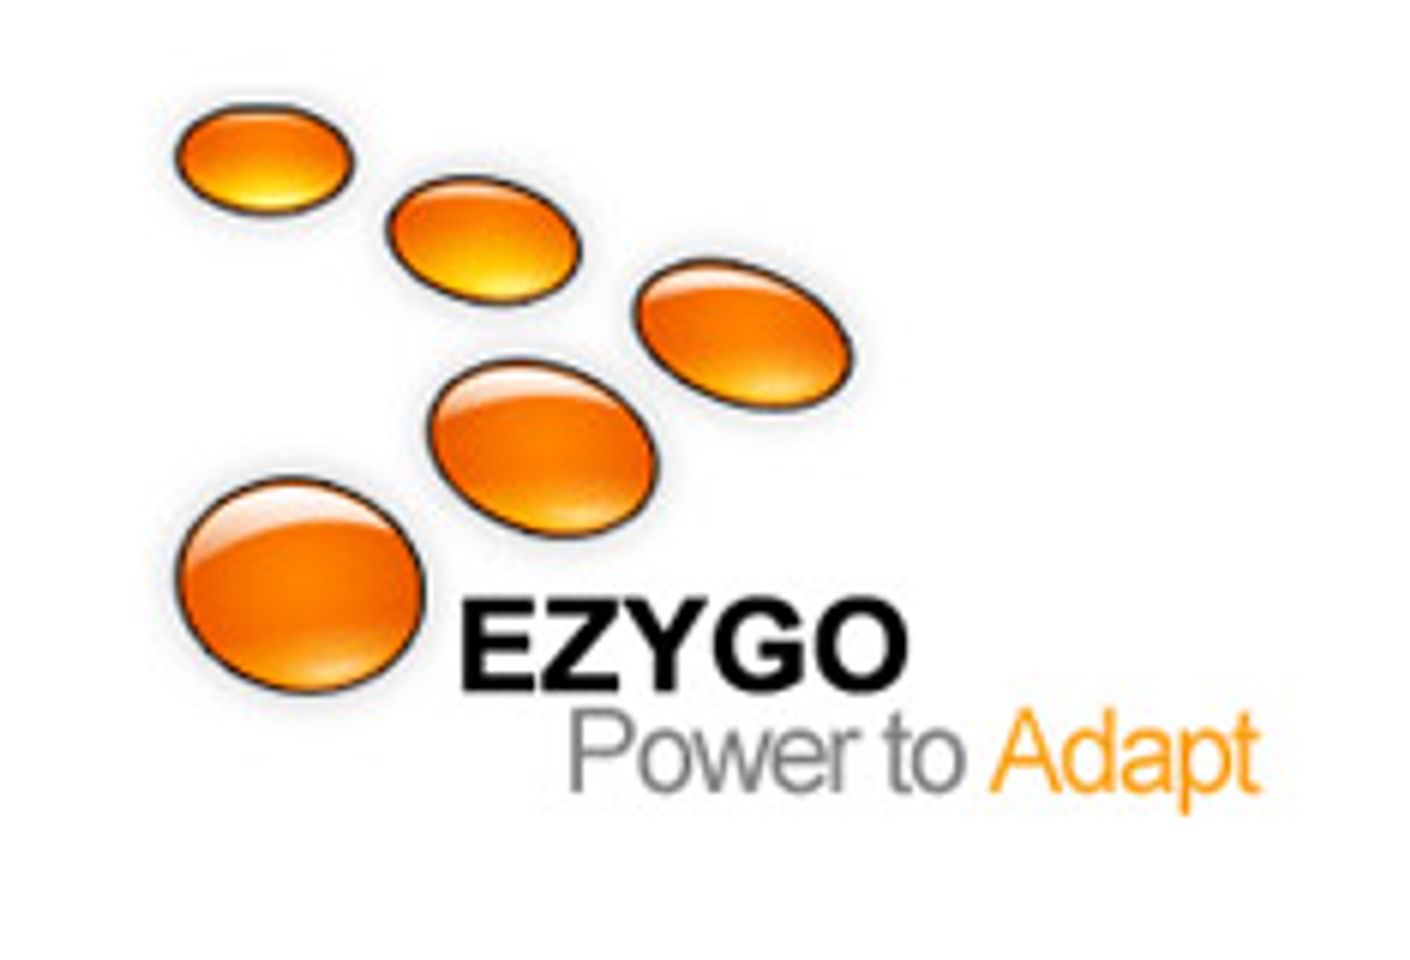 Ezygo.com Gets Evil